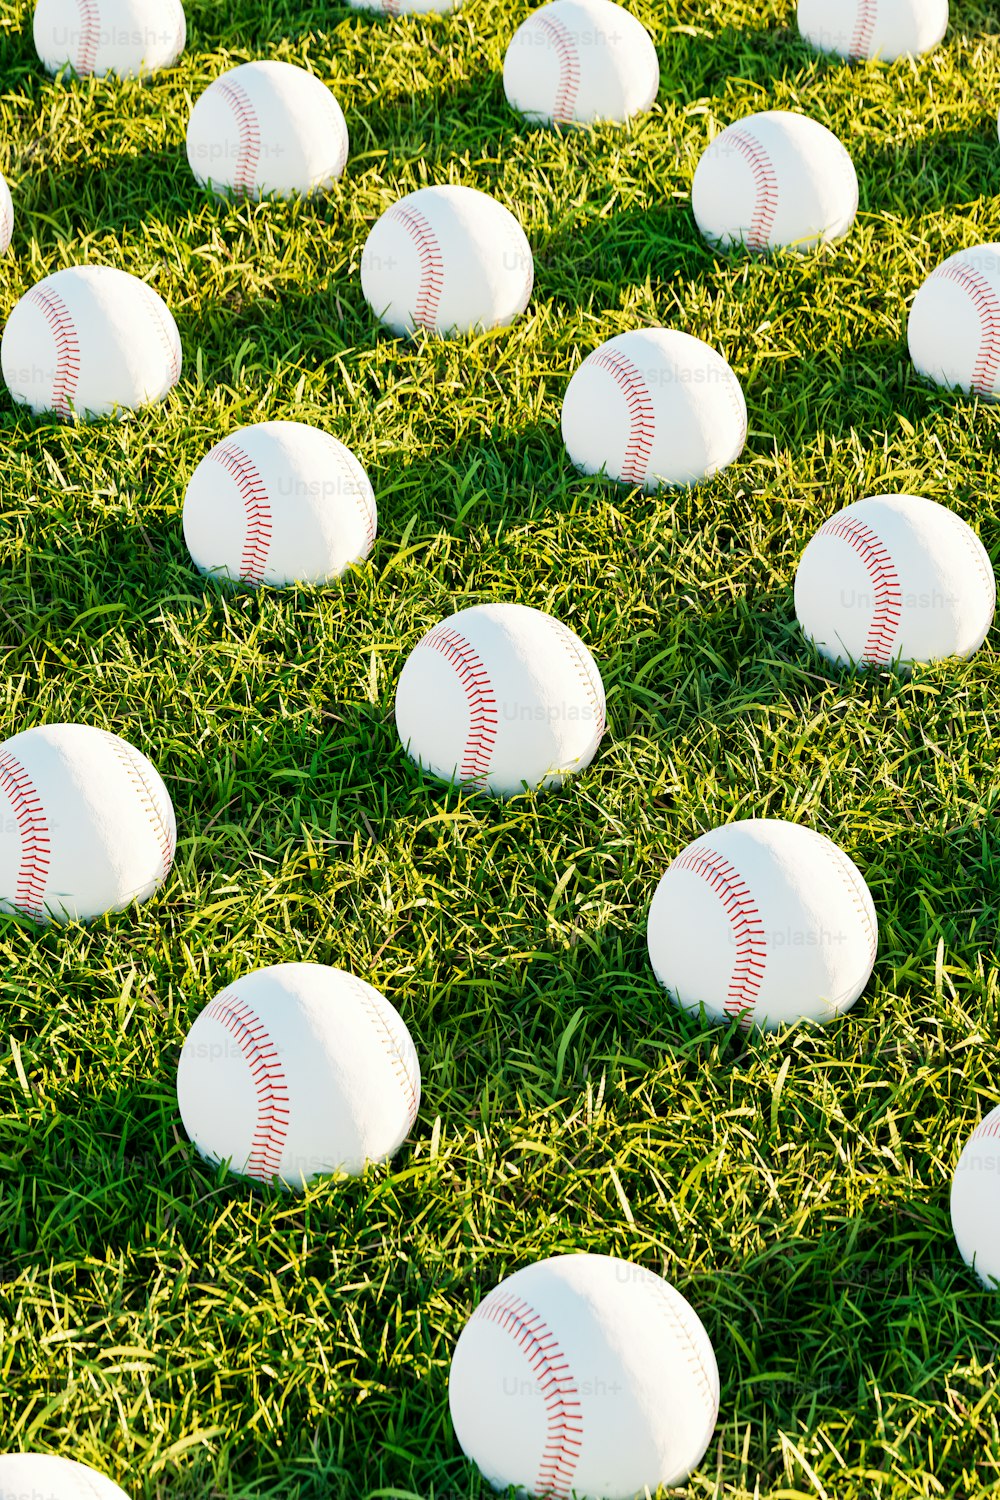 푸른 잔디 위에 하얀 야구공이 가득한 들판